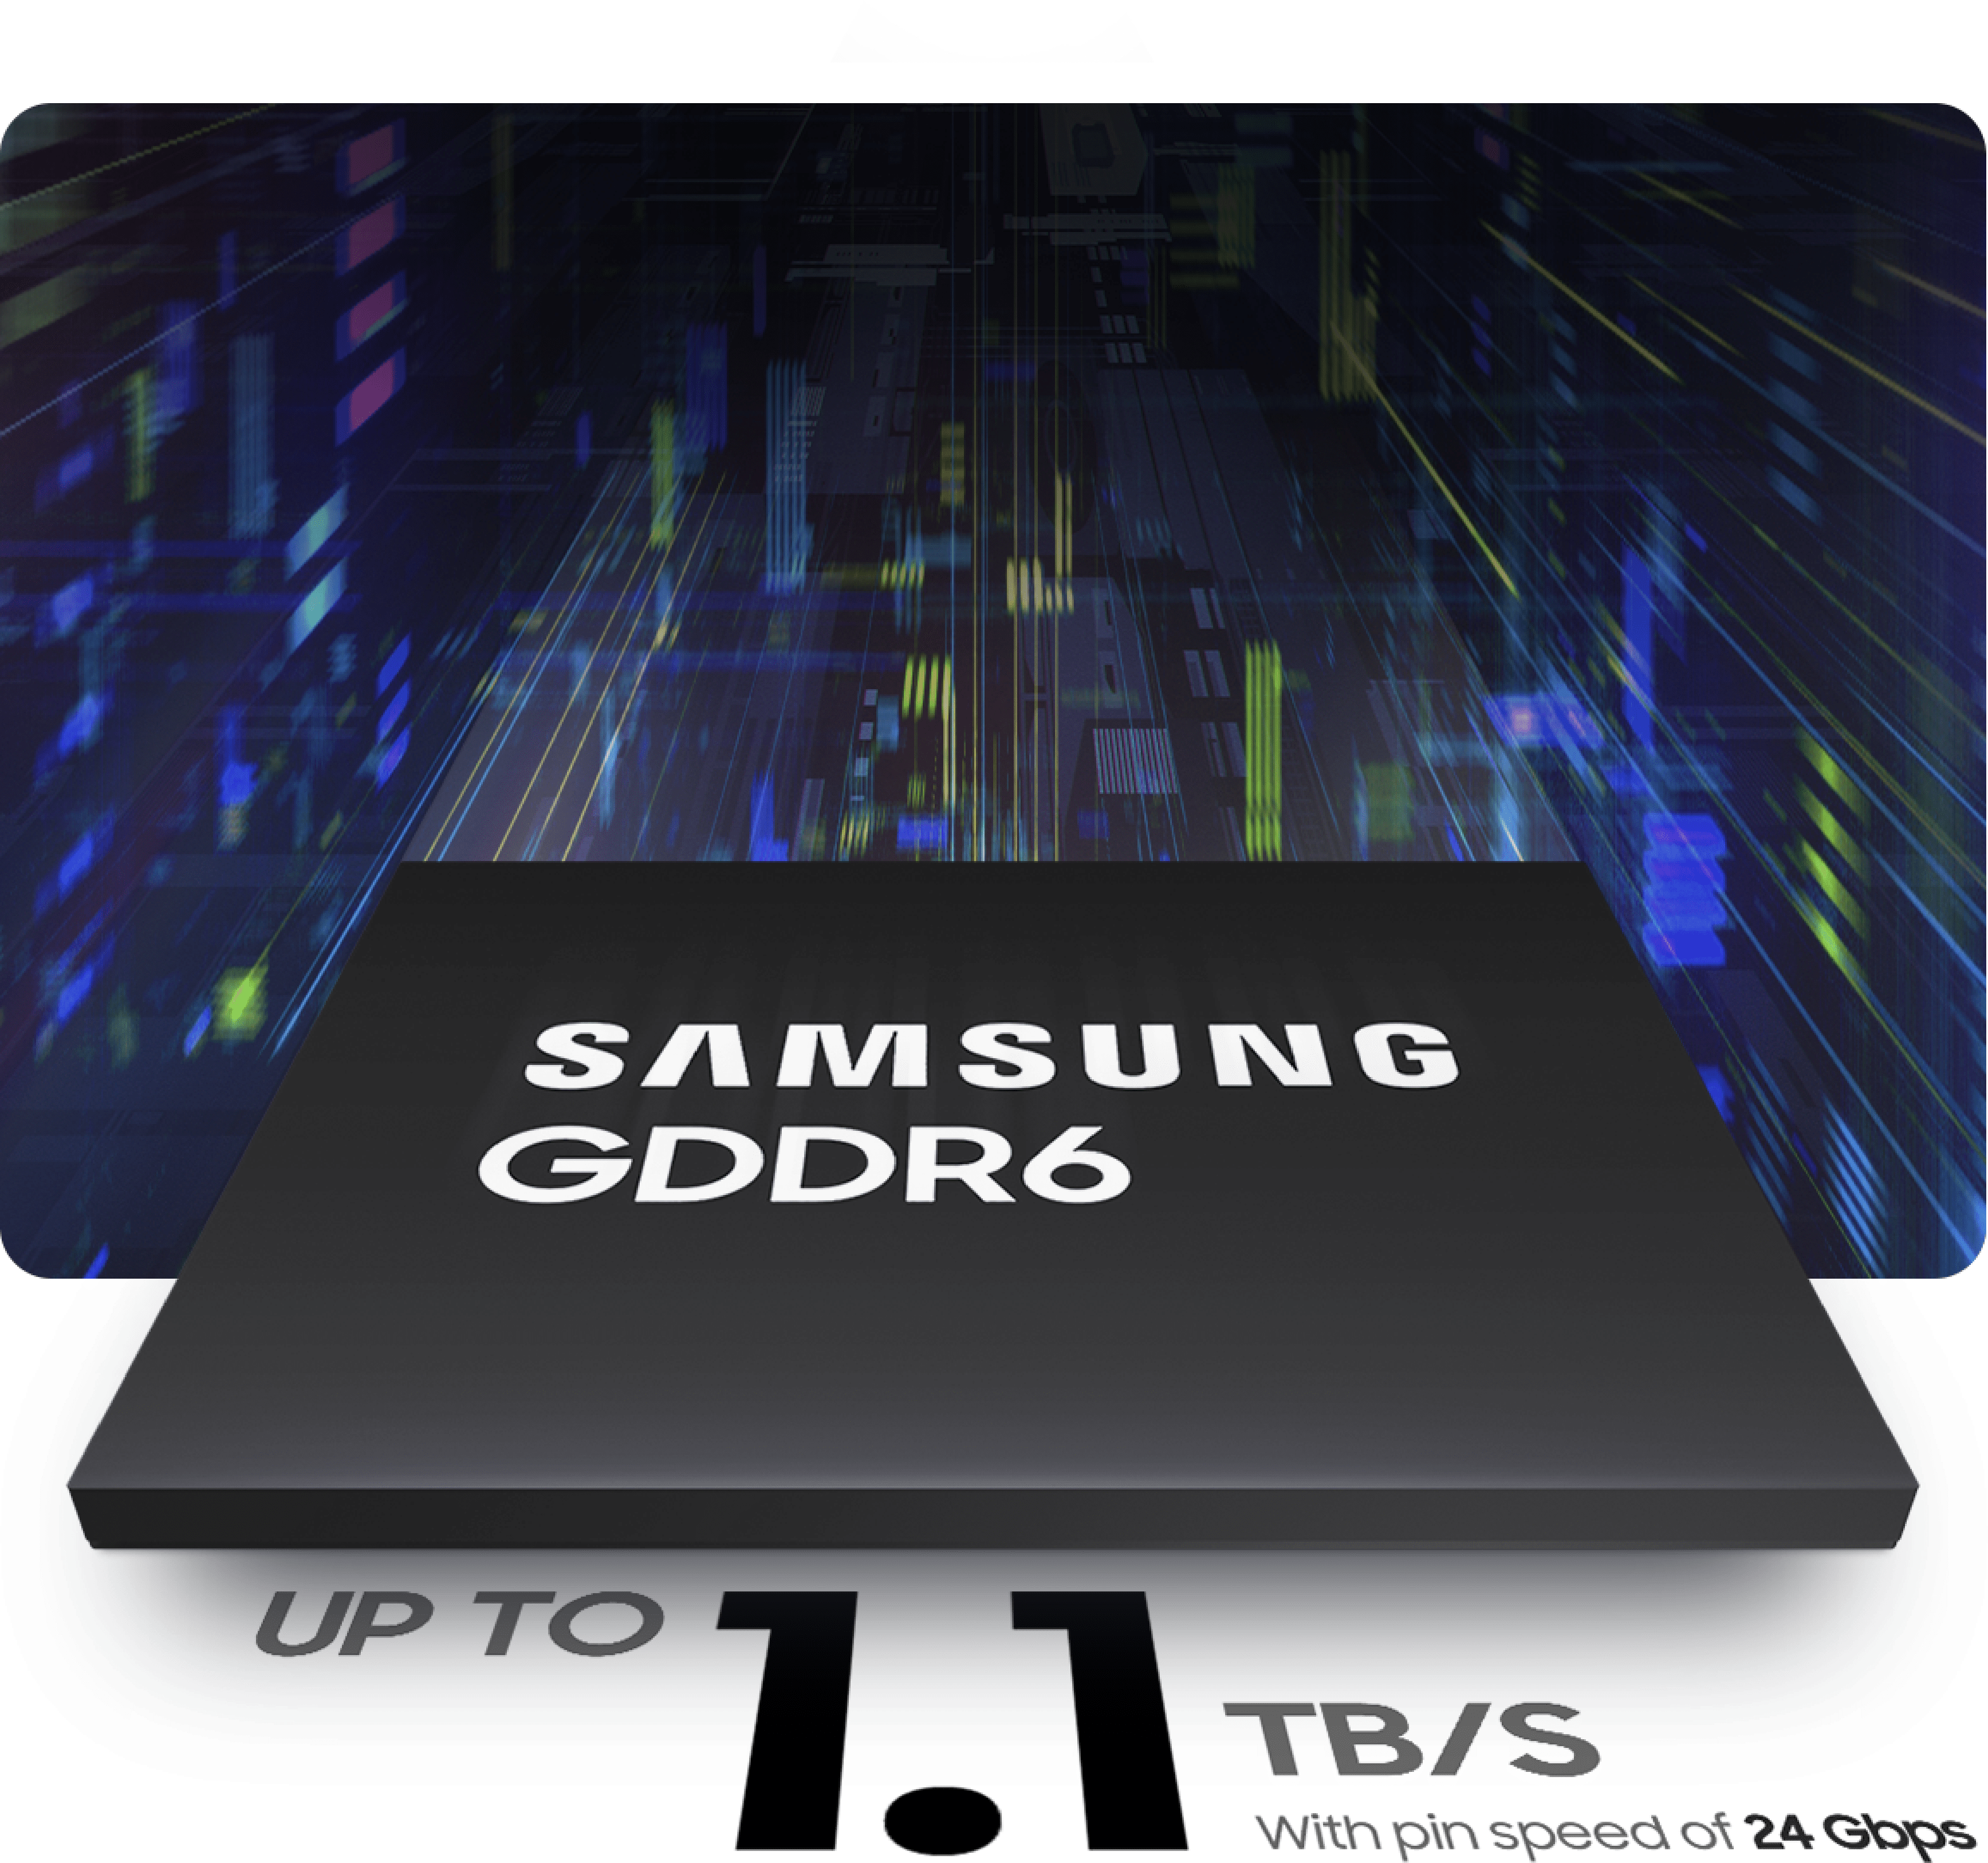 サムスンGDDR6の帯域幅は最大1.1TB/ s、速度は最大24Gbpsです。